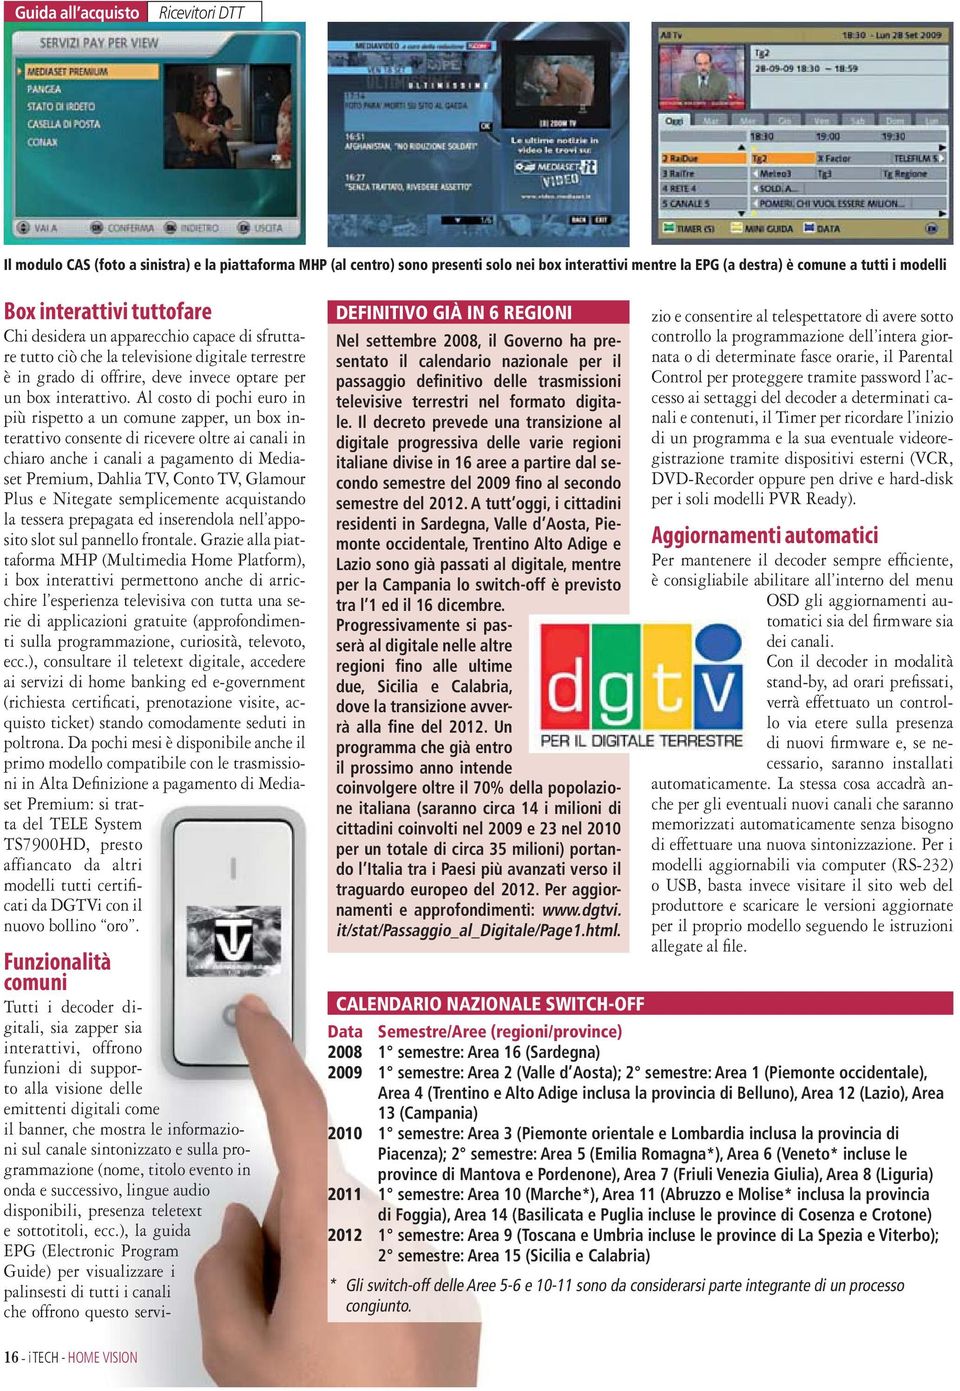 Il decreto prevede una transizione al digitale progressiva delle varie regioni italiane divise in 16 aree a partire dal secondo semestre del 2009 fino al secondo semestre del 2012.